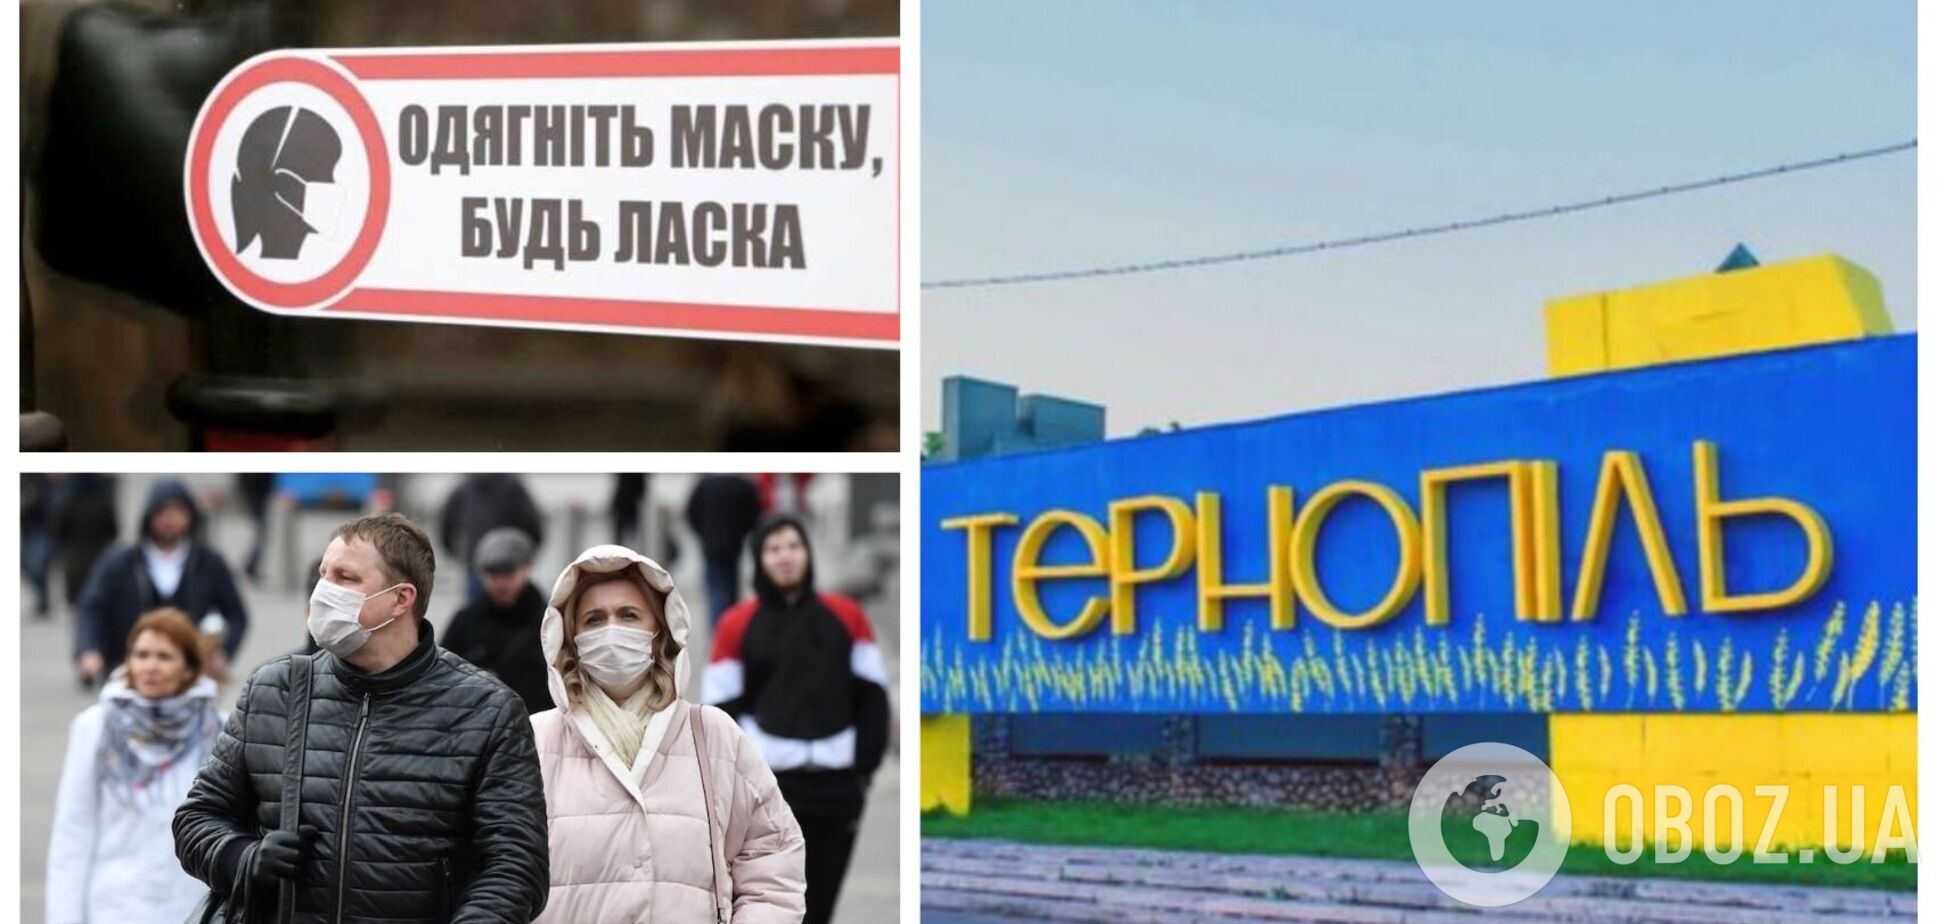 В Тернополе ввели обязательный масочный режим из-за COVID-19: какая ситуация с заболеваемостью